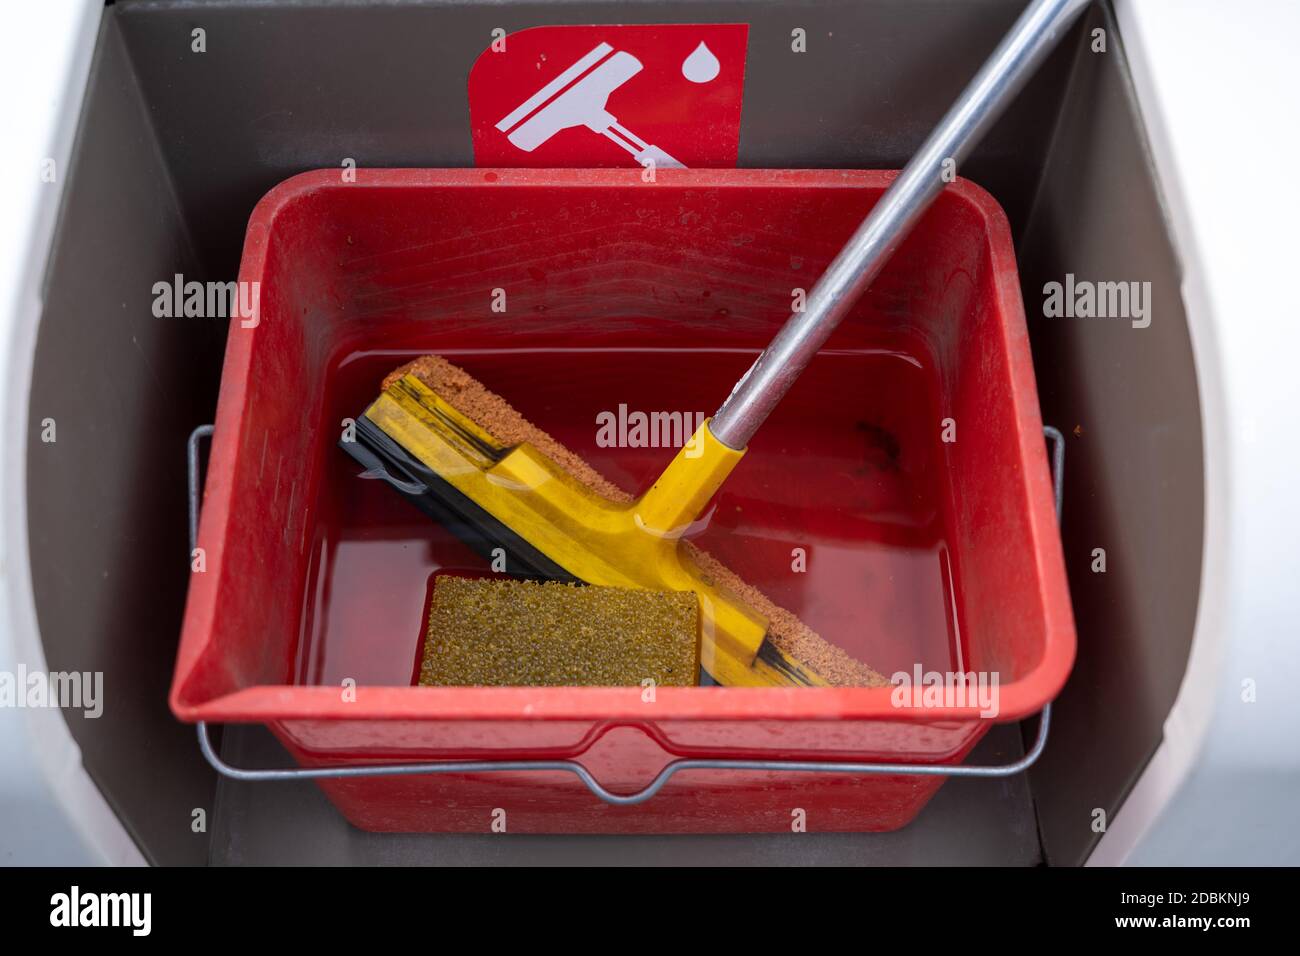 Reinigungsset mit Rakel, Schwamm und Wasser für Windschutzscheiben in einem roten Eimer an einer Tankstelle, ausgewählter Fokus, enge Schärfentiefe Stockfoto